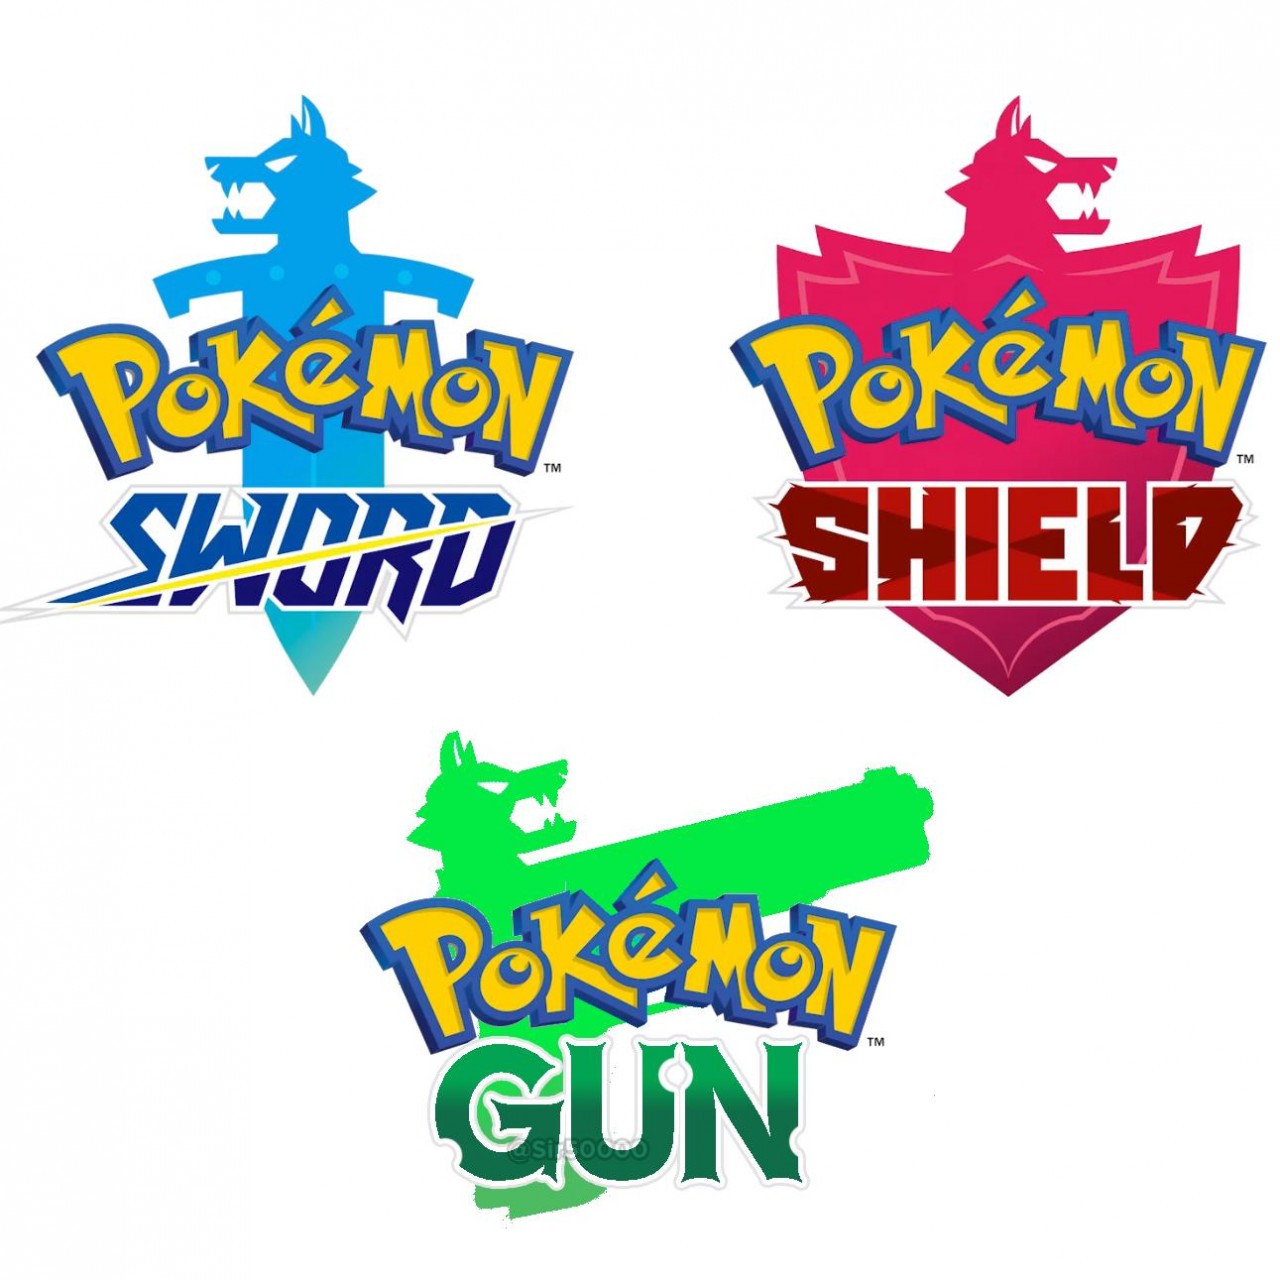 Pokemon Gun meme.